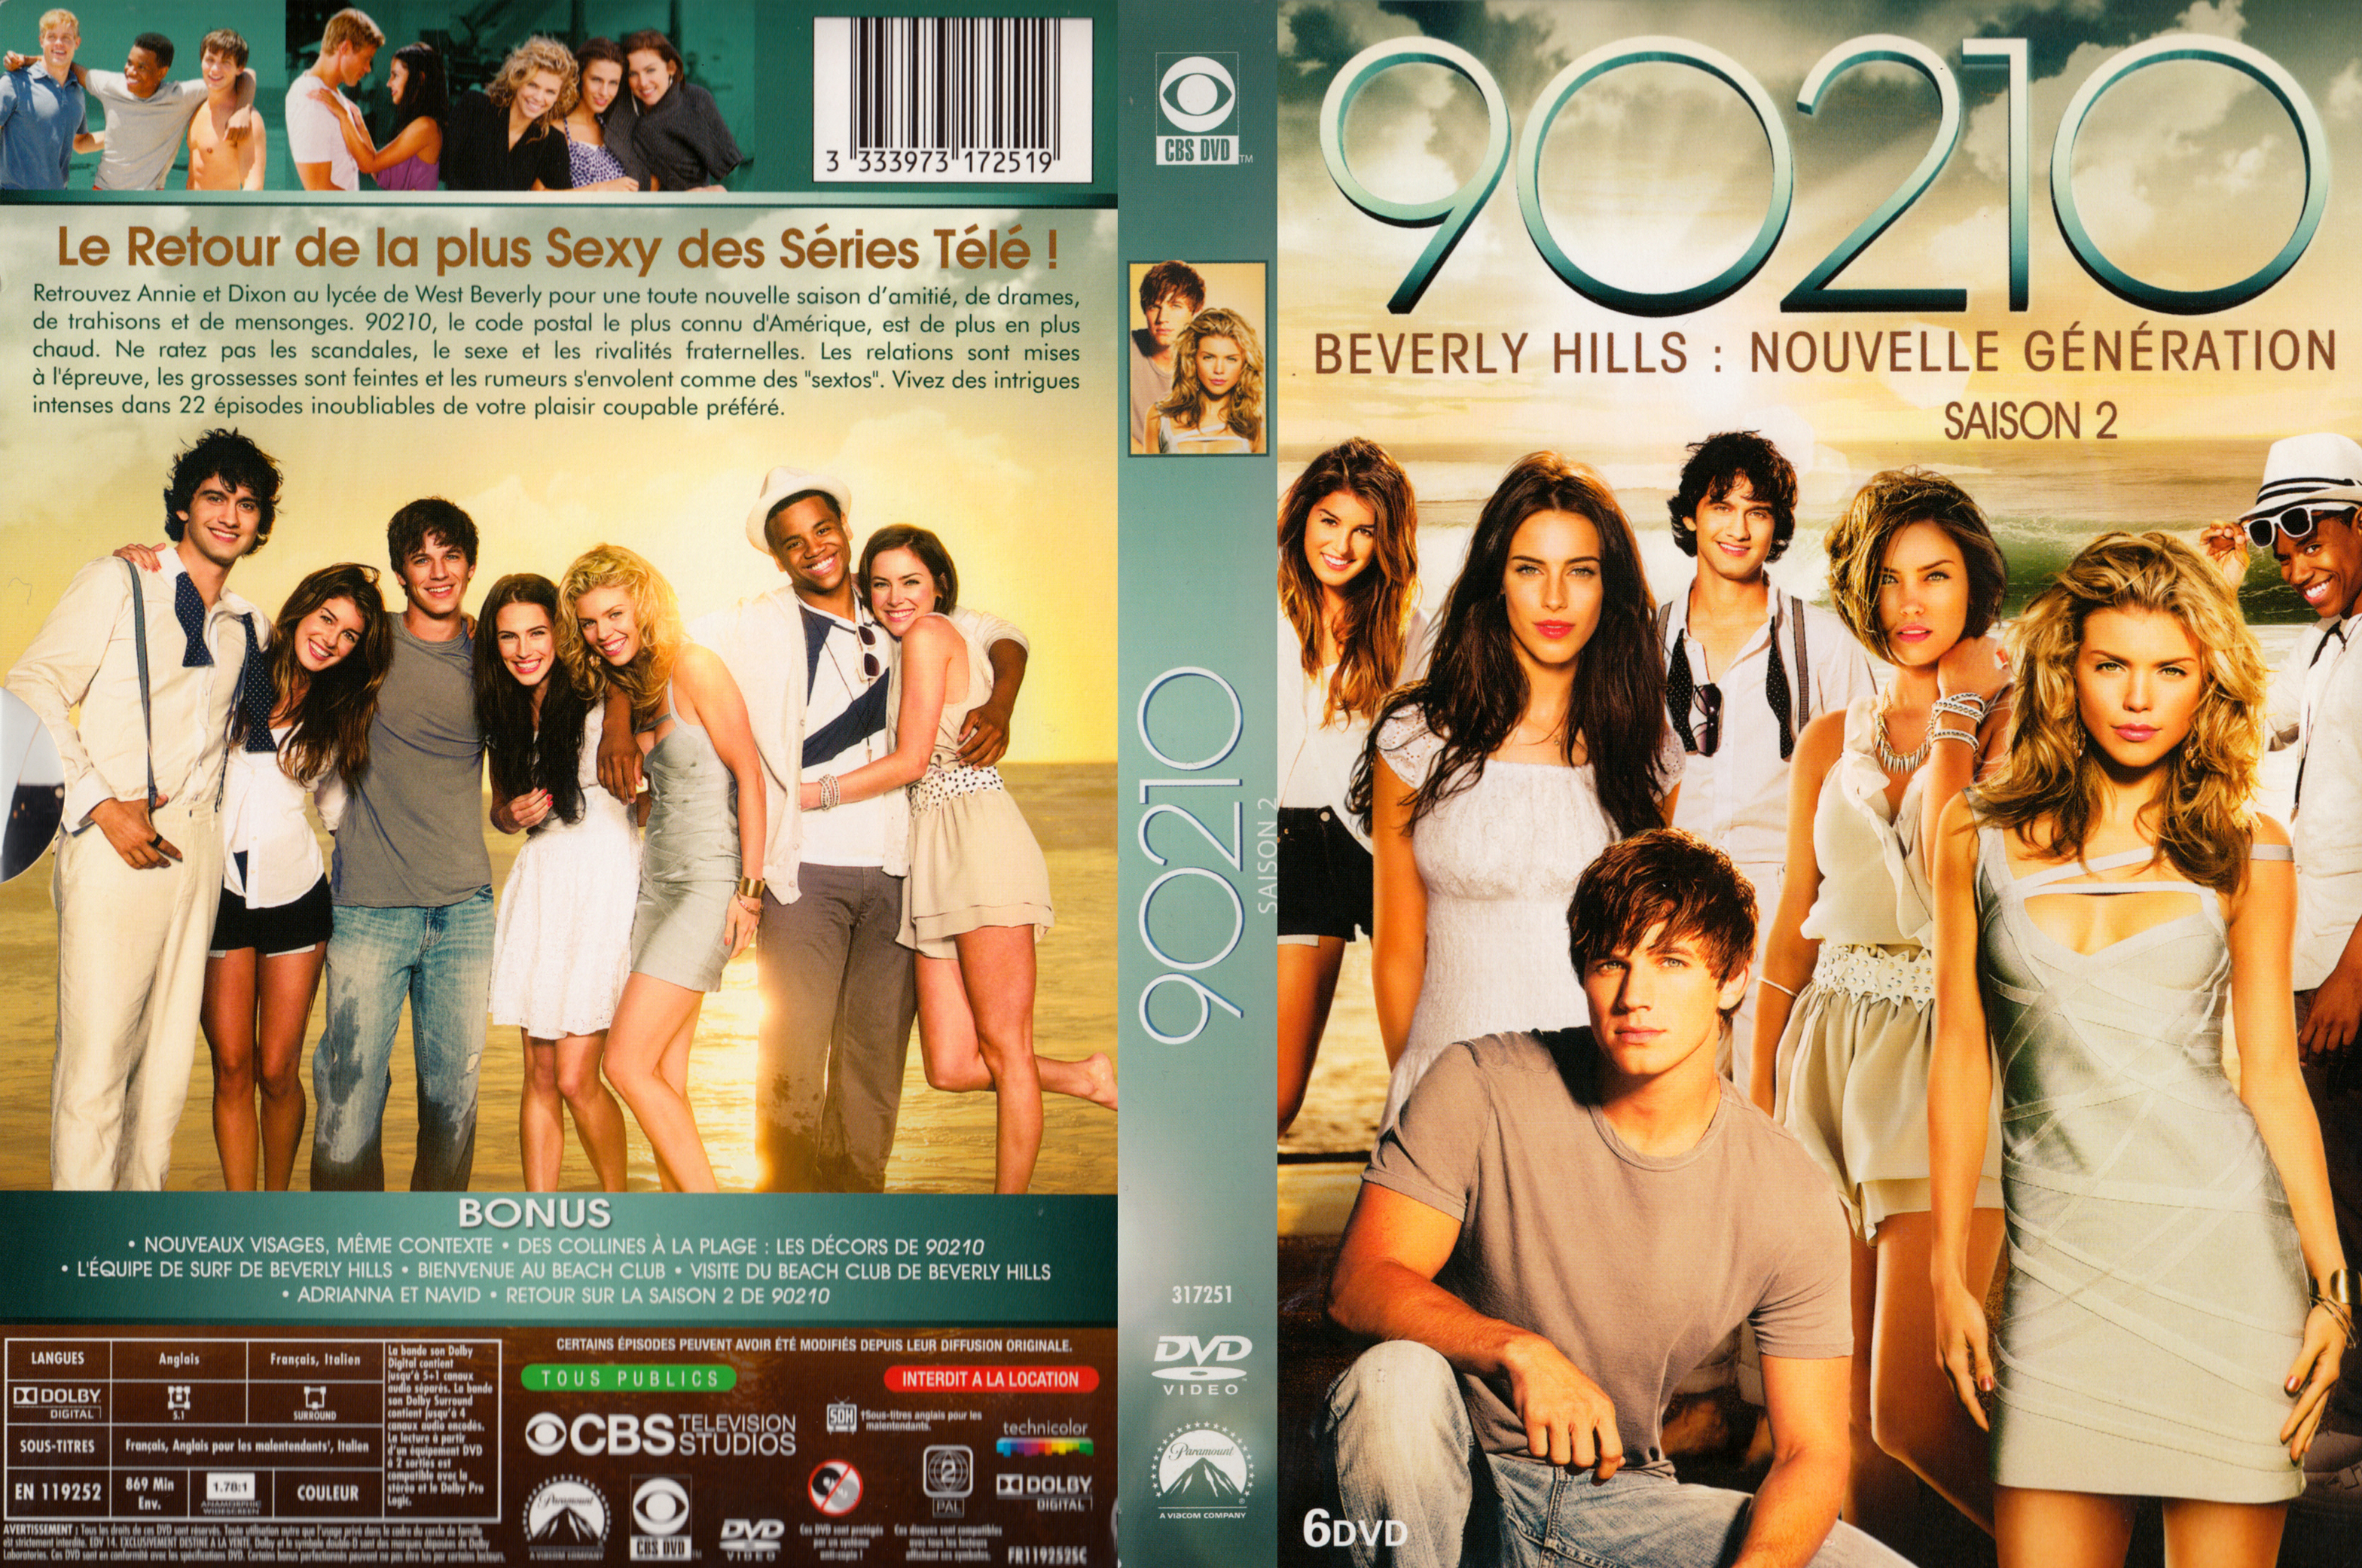 Jaquette DVD 90210 Saison 2 COFFRET